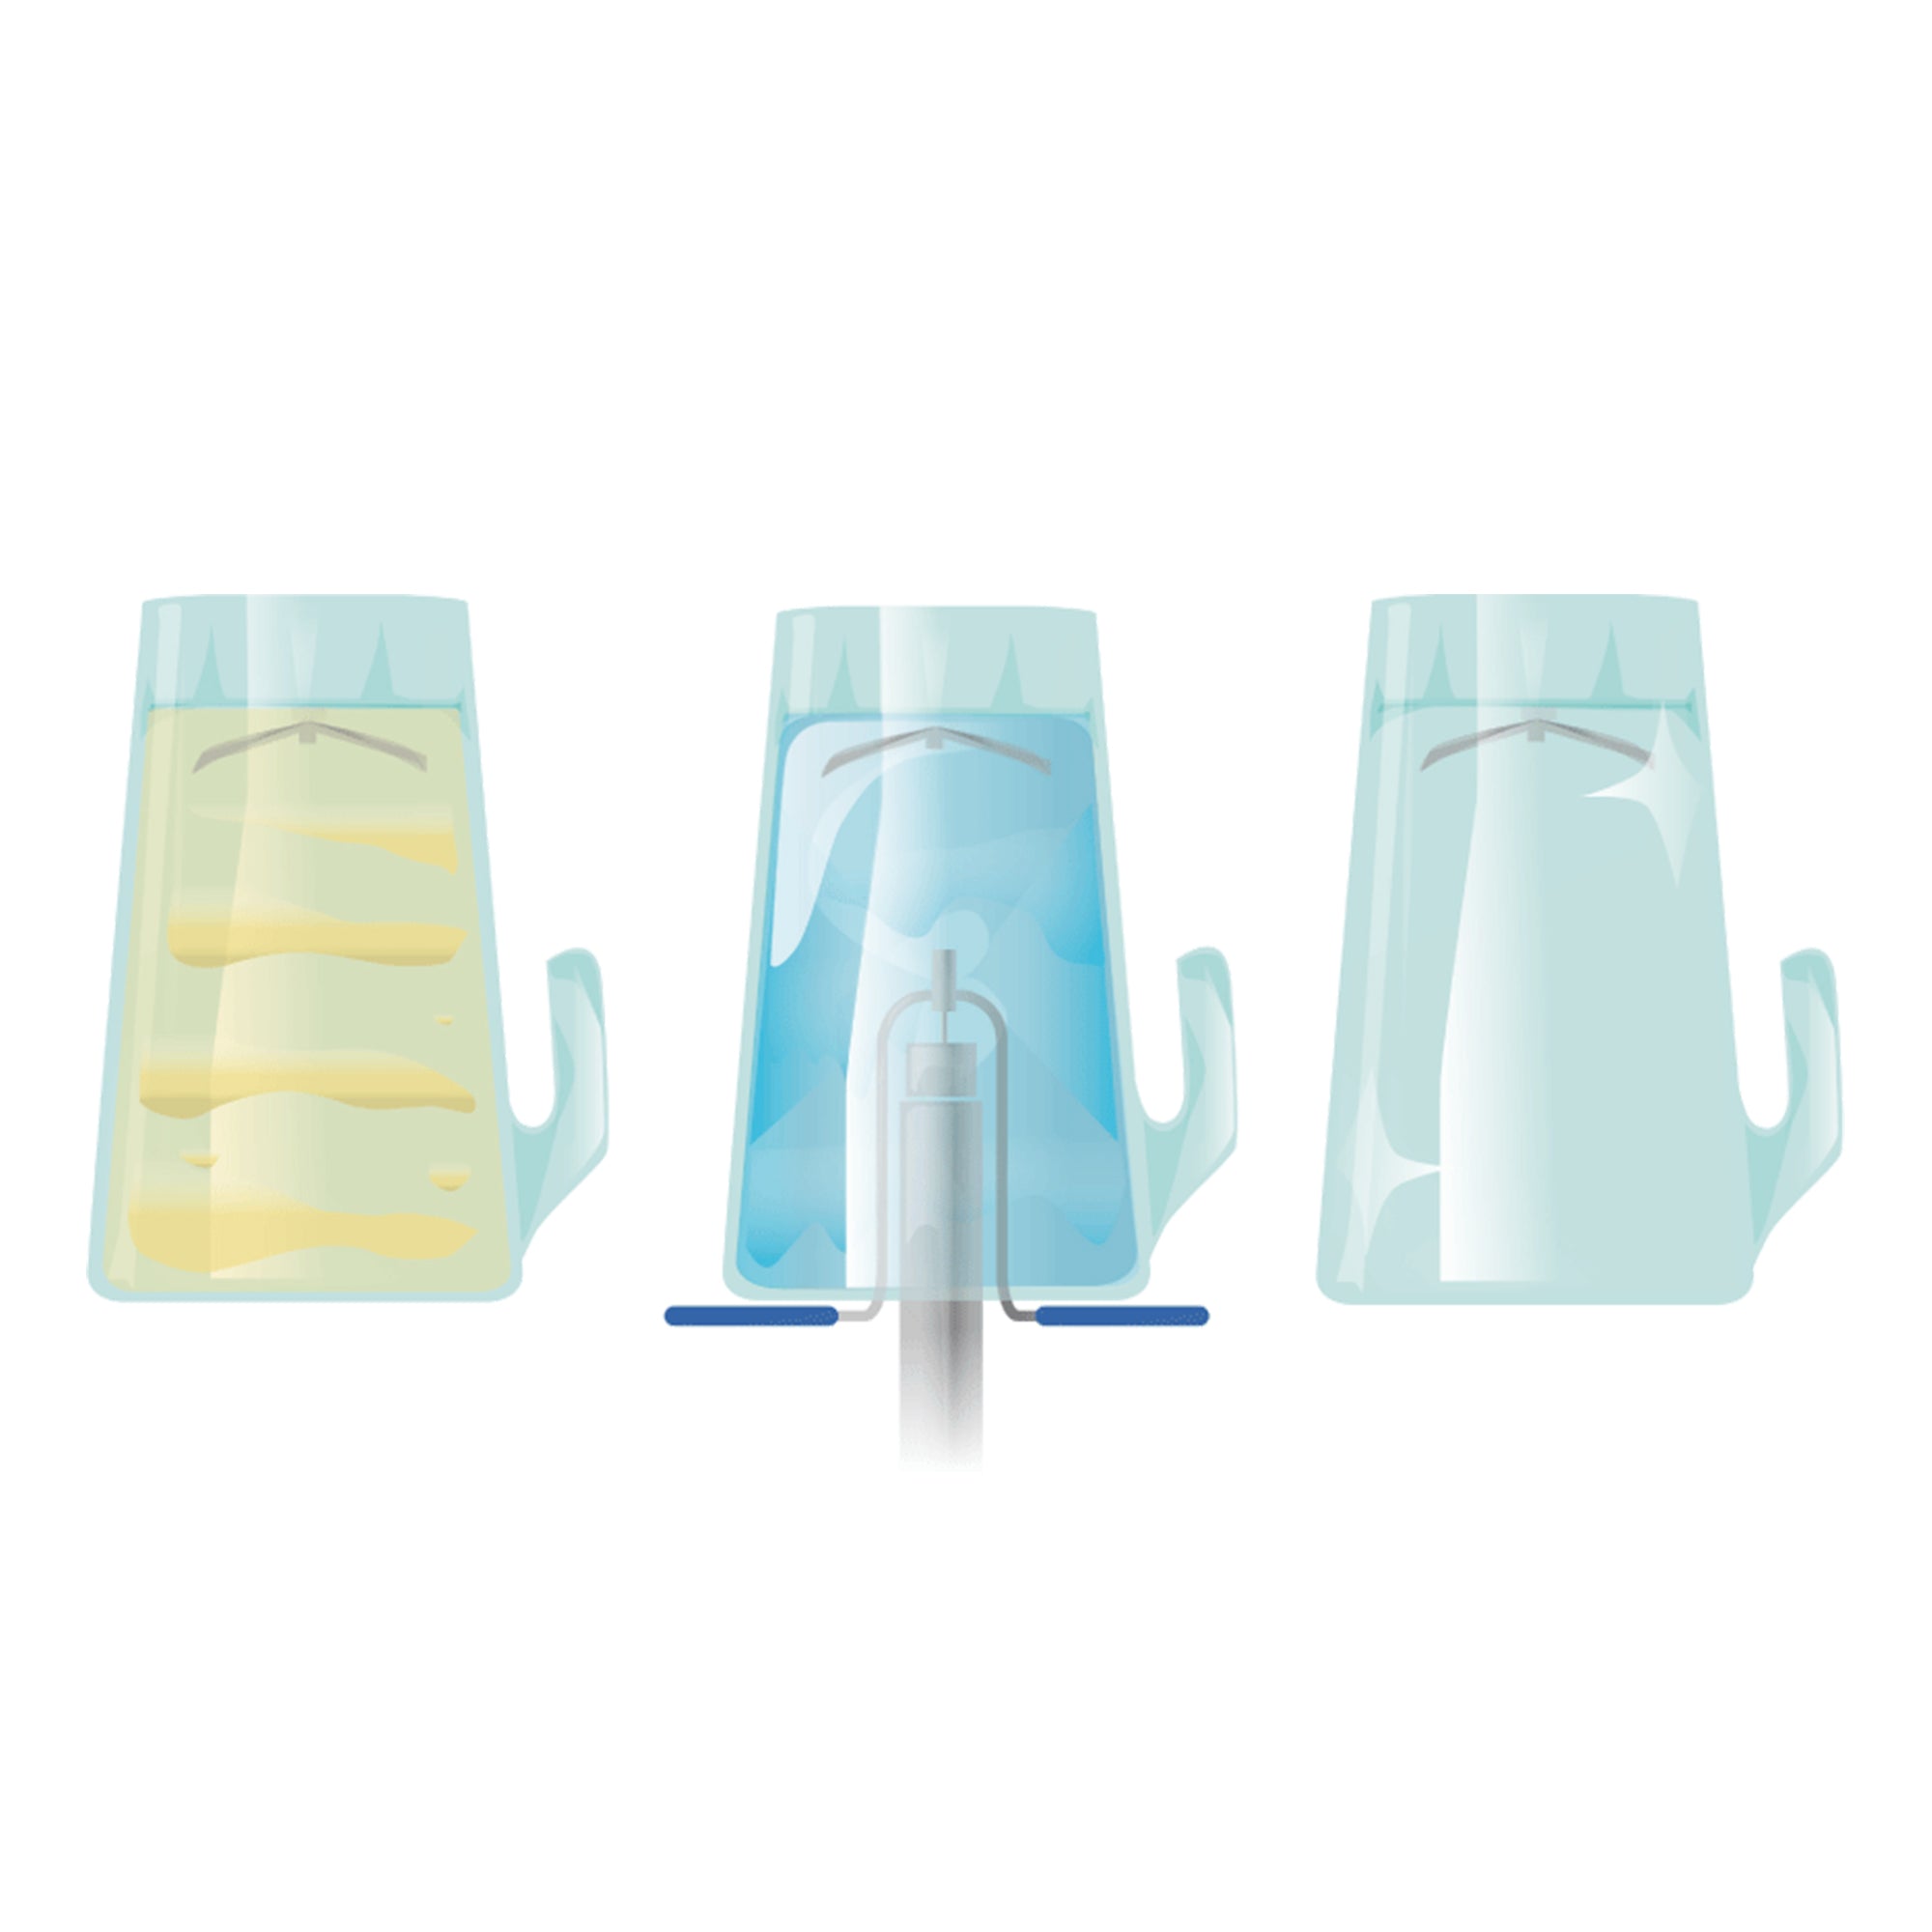 Beholder/glasbruser med automatisk vandstop